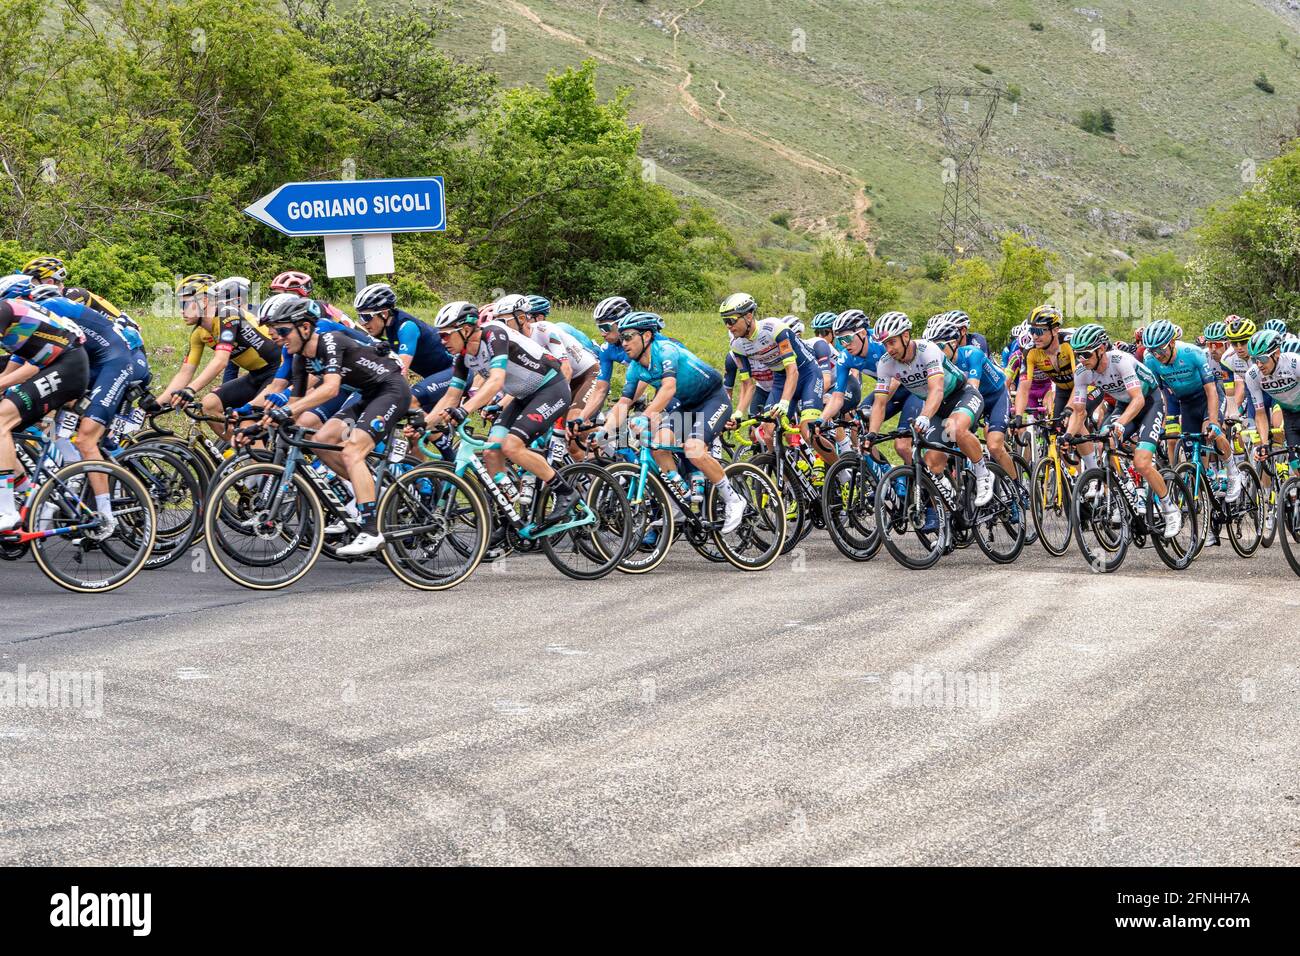 Bergbühne in den Abruzzen des Giro d'Italia. Gruppe von Radfahrern im Rennen. Abruzzen, italien, europa Stockfoto